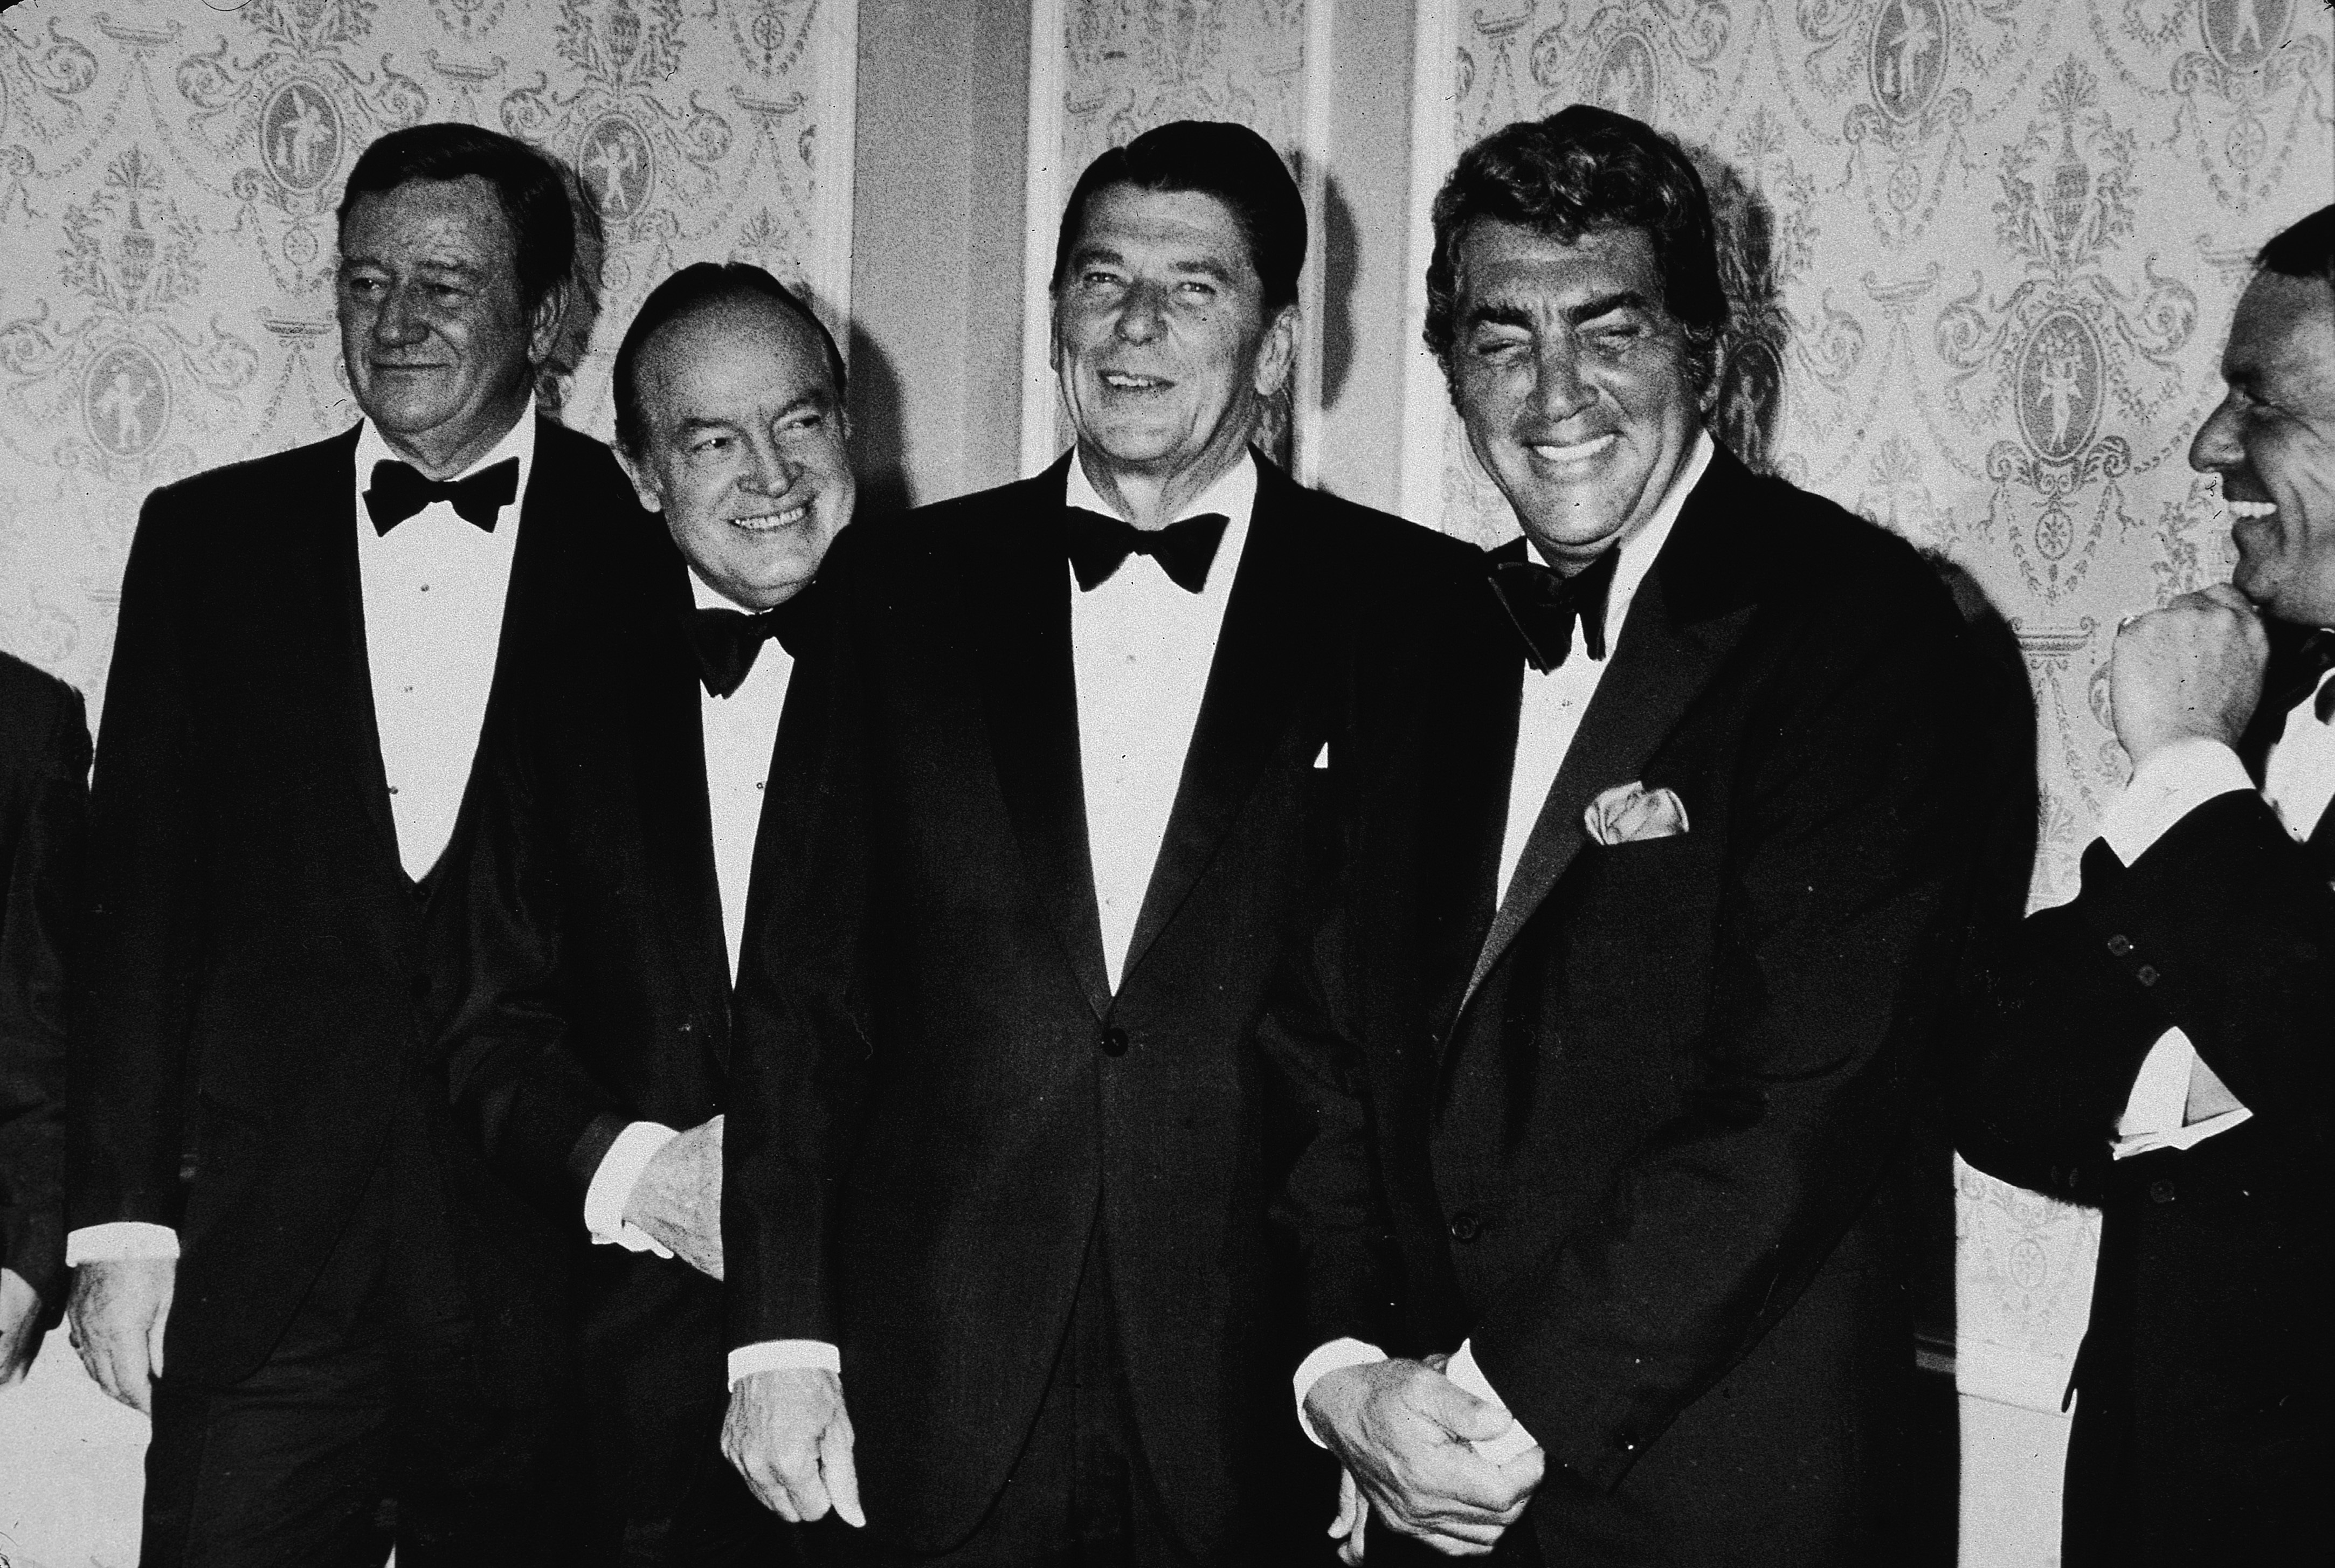 1970. John Wayne (primo da sinistra) con Bob Hope, Ronald Reagan, Dean Martin e Frank Sinatra alla cena a favore della candidatura di Regan alle Presidenziali